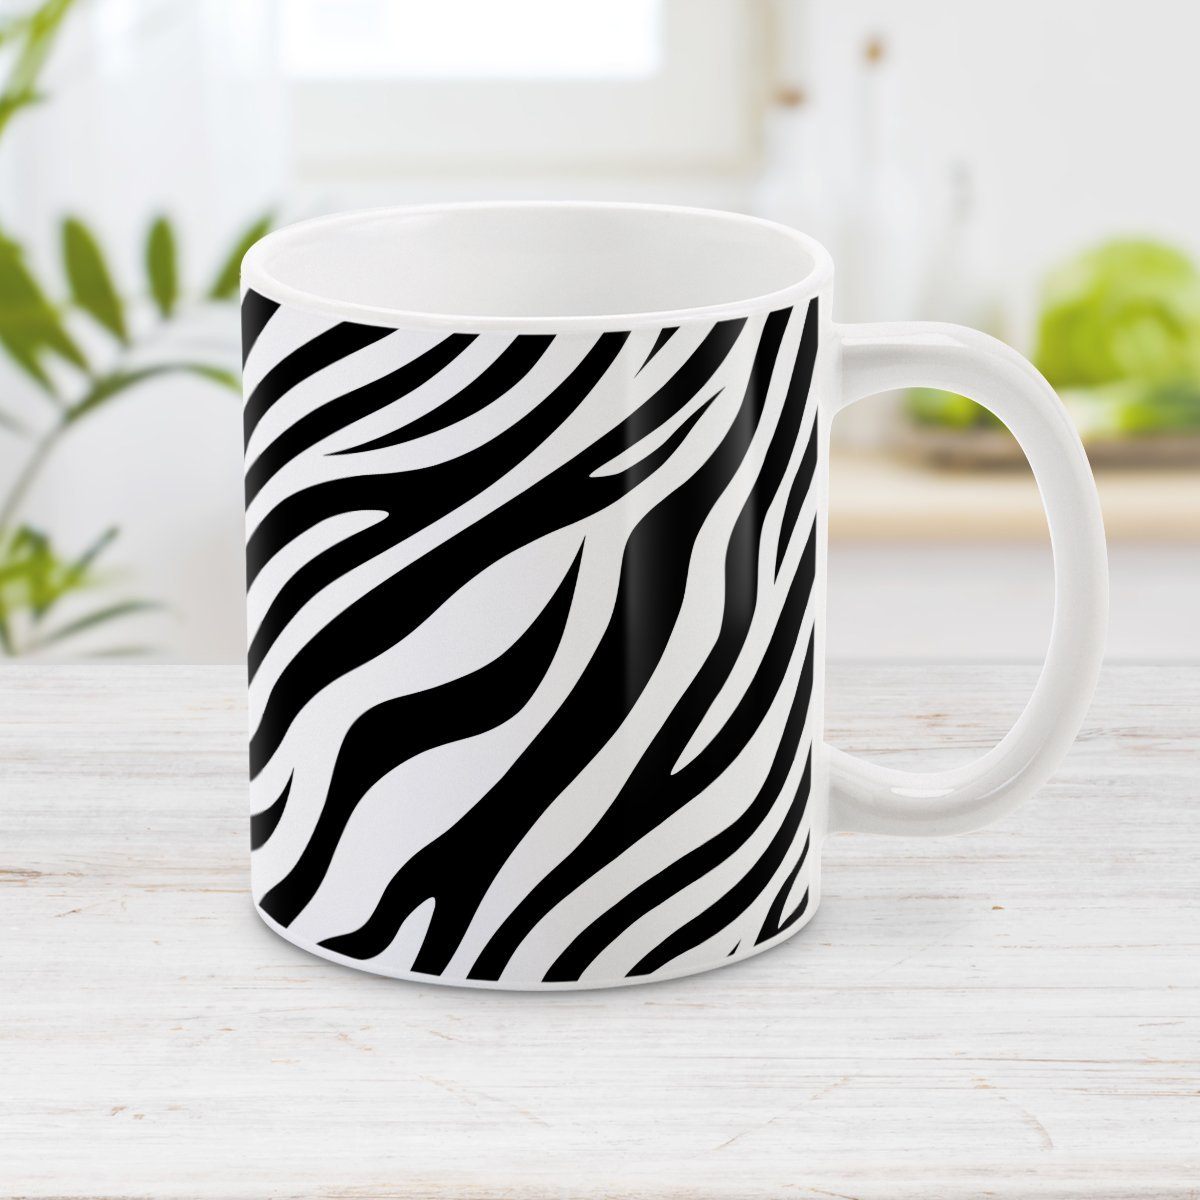 Zebra Print Pattern Mug at Amy's Coffee Mugs